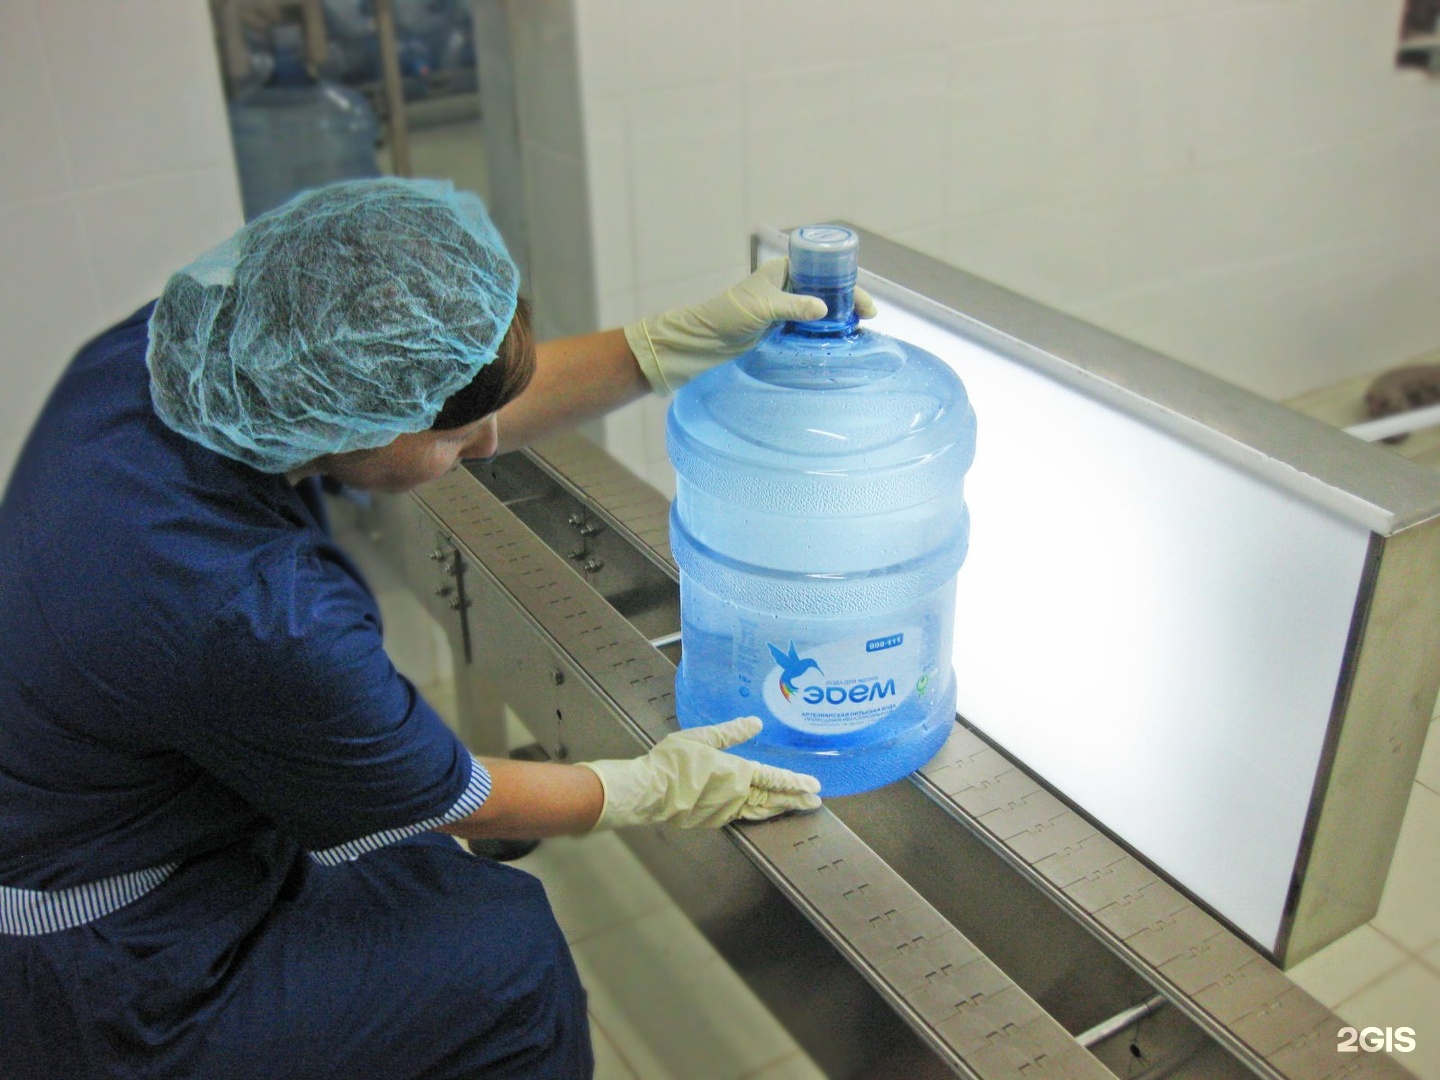 Хранение дистиллированной воды